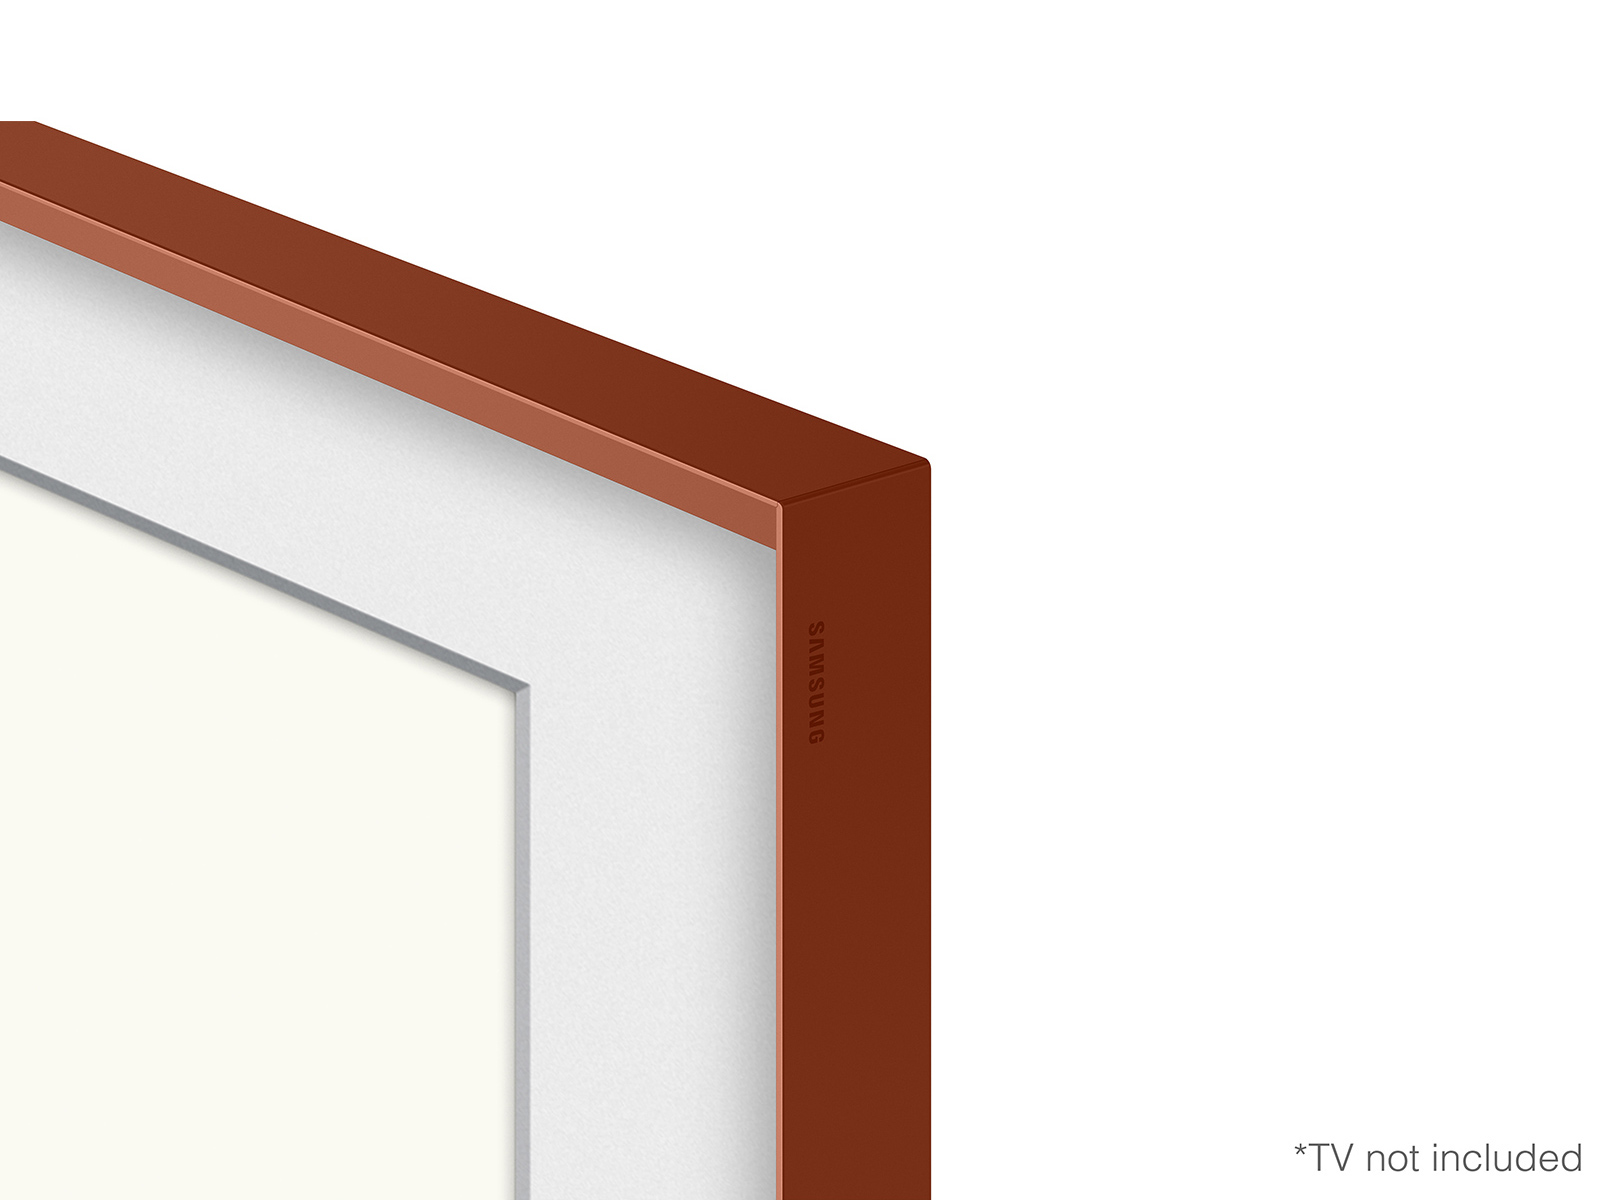 65-Inch Beveled Brick Red TV Bezel | The Frame | Samsung US